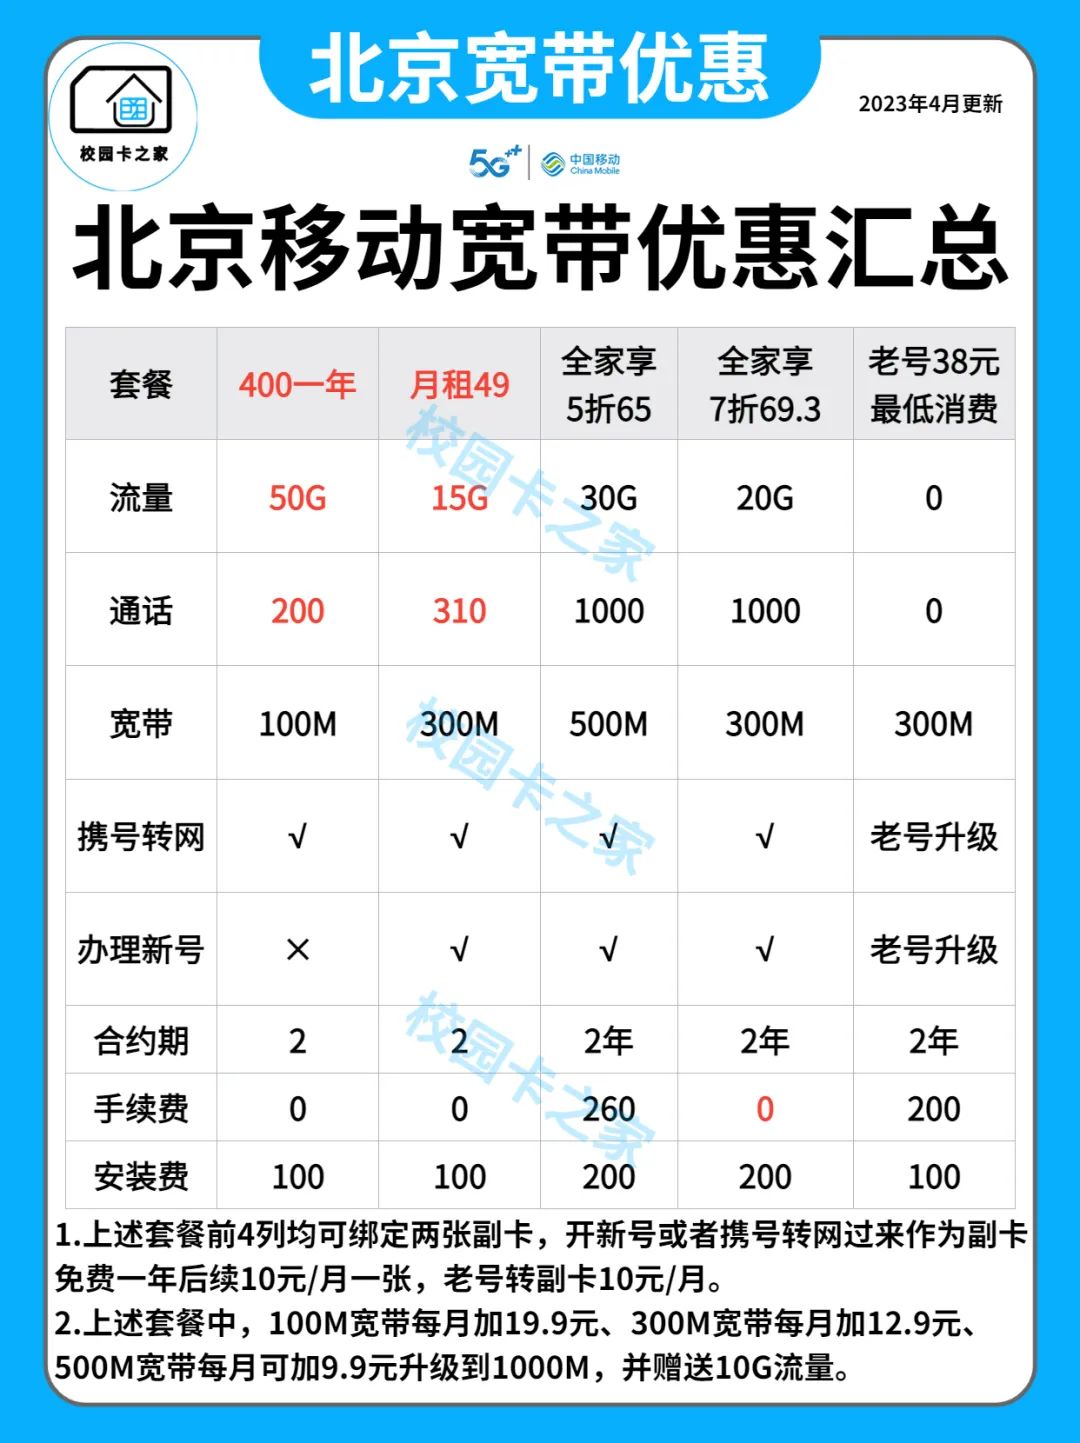 2023年4月北京移动电信联通宽带优惠活动汇总套餐价格一览表插图2